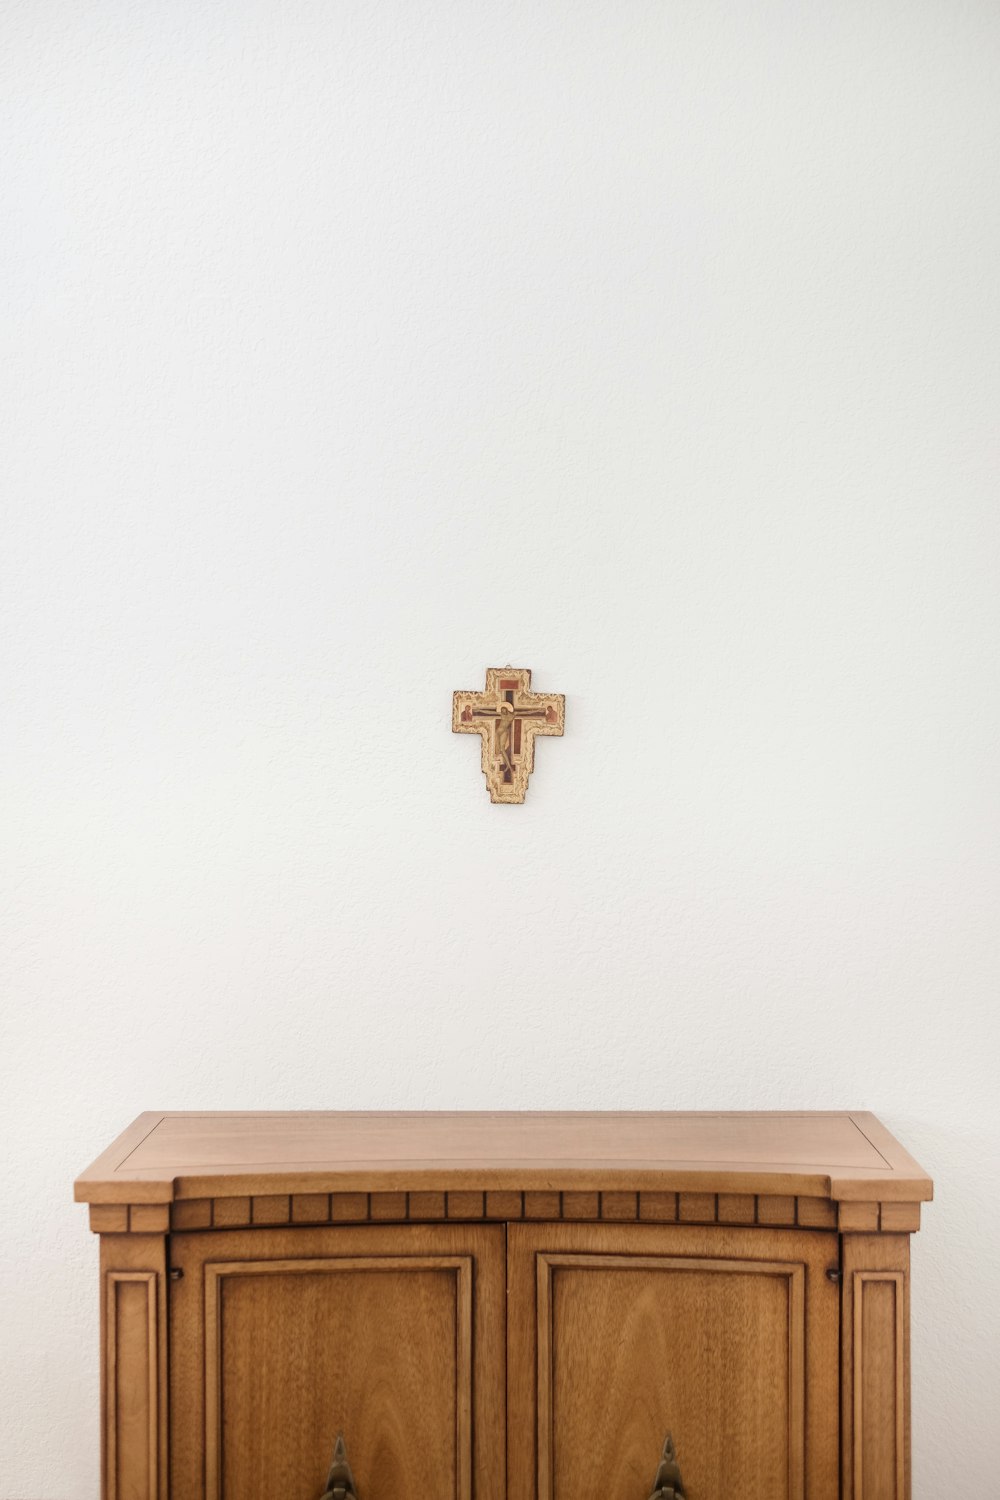 croce marrone sulla parete sopra la credenza in legno marrone